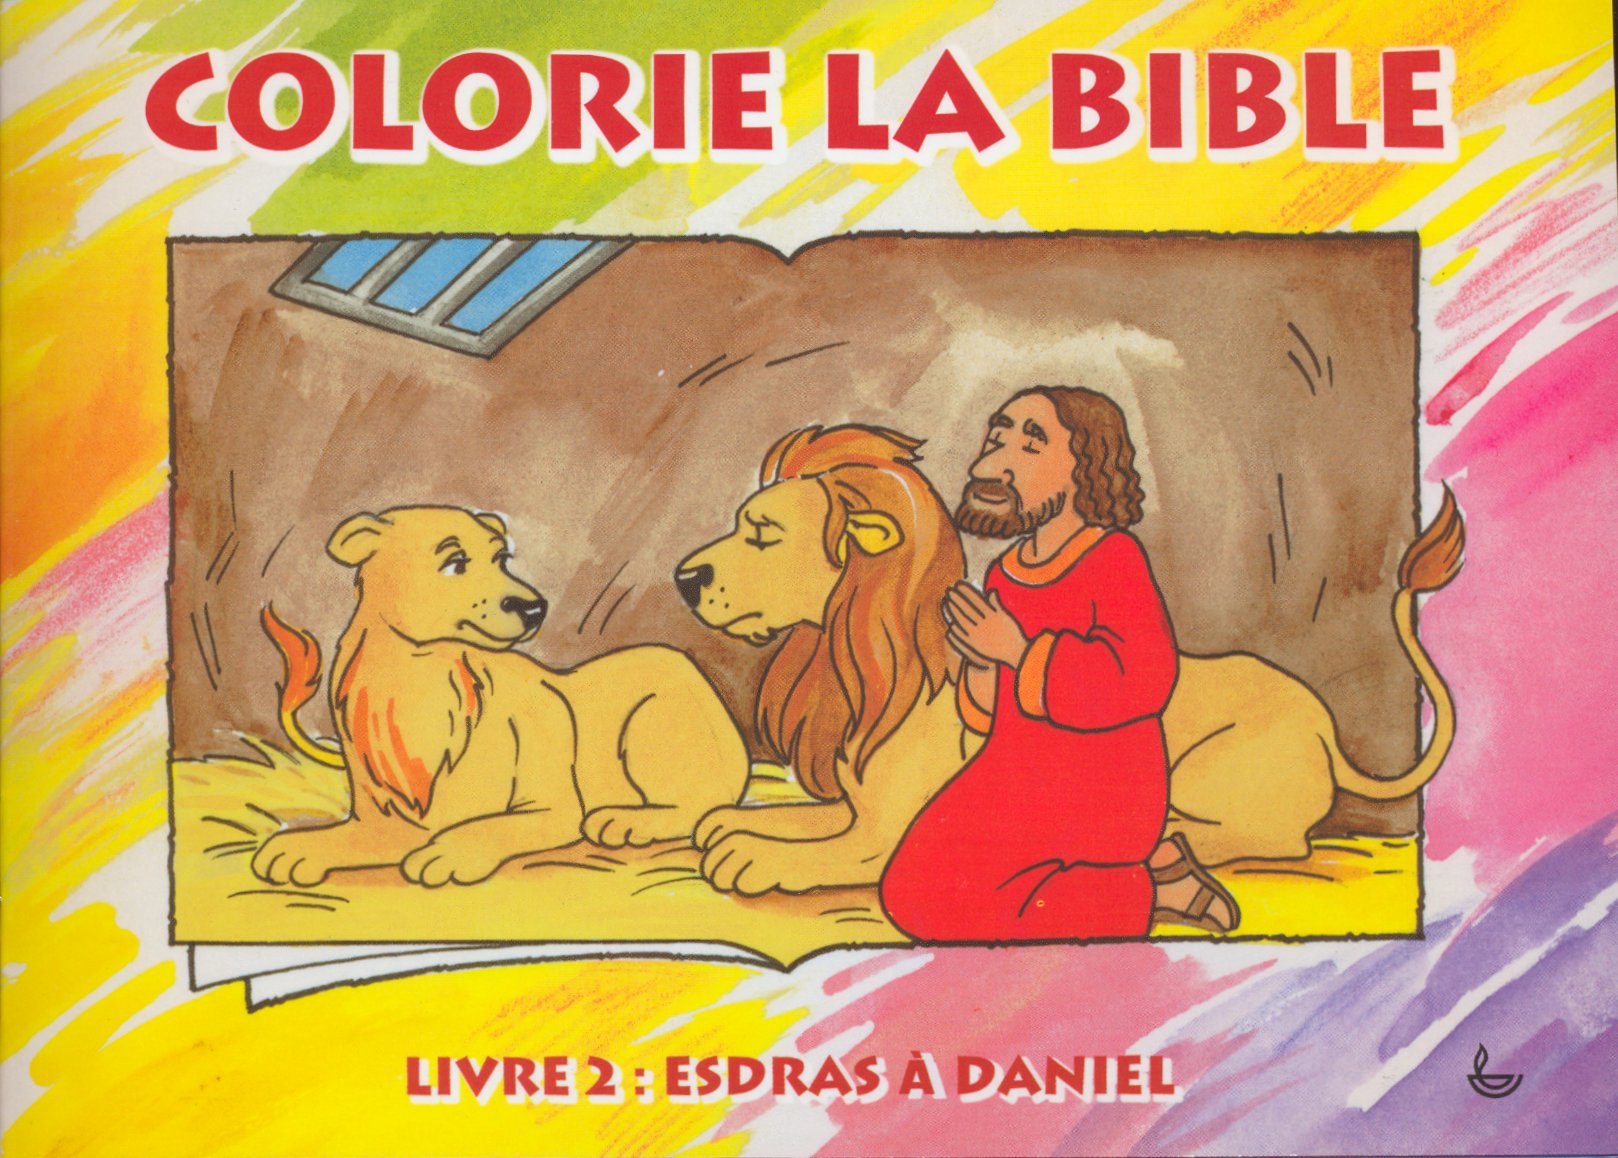 Esdras à Daniel - Colorie la Bible, livre 2 